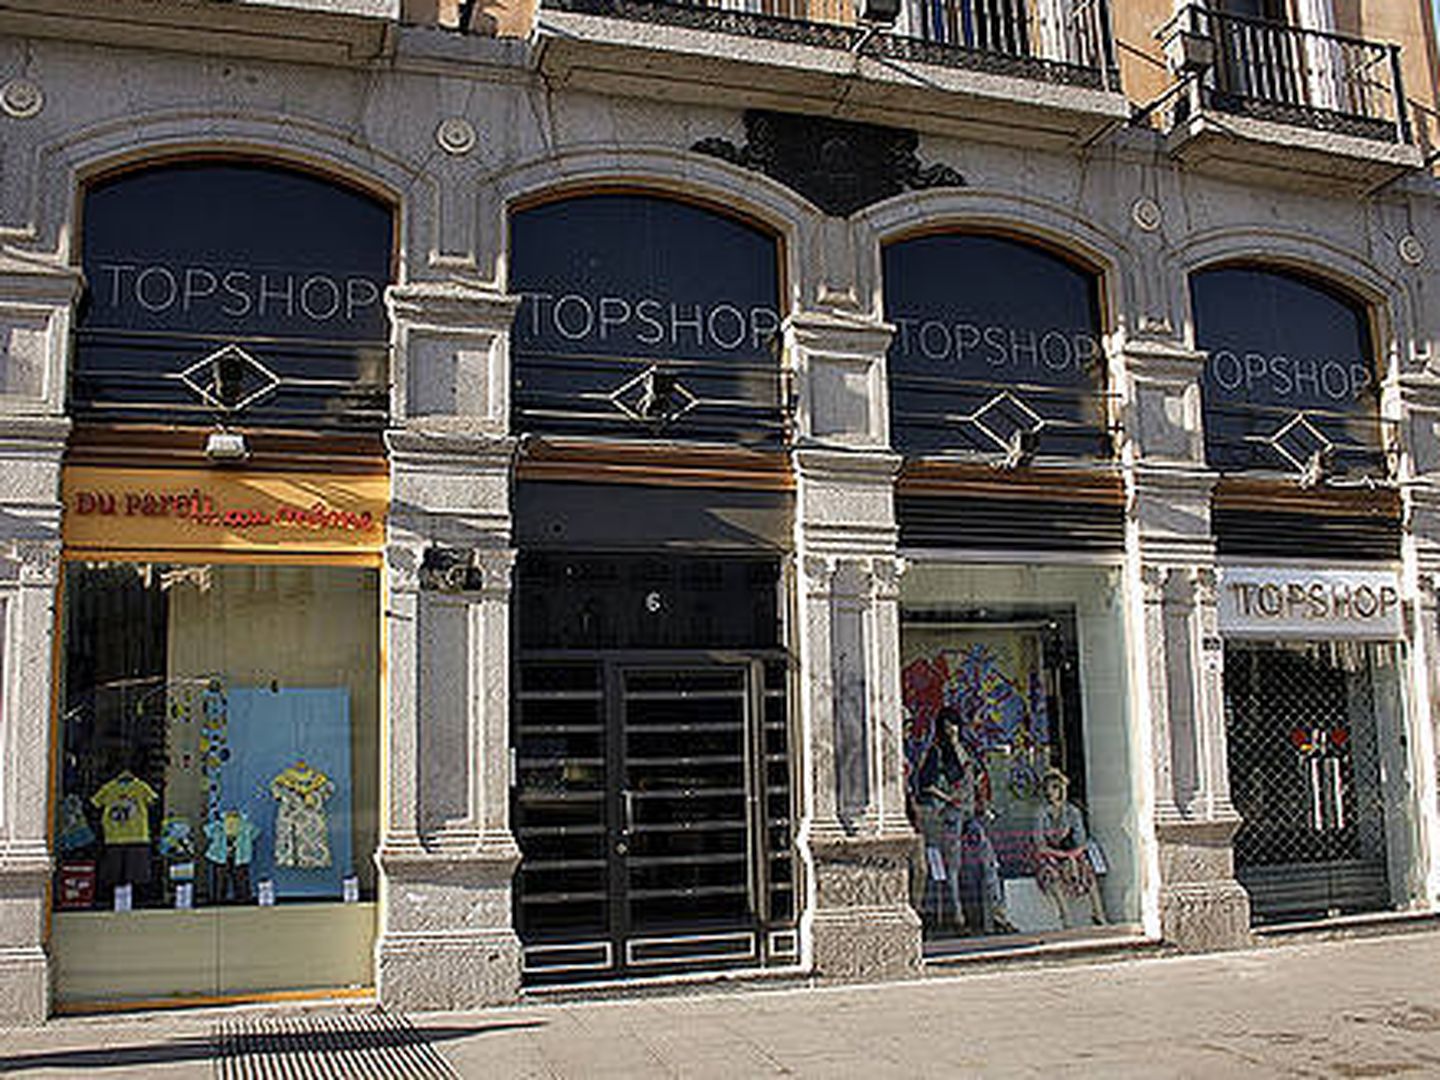 Topshop contaba con una tienda de varios pisos en la Puerta del Sol (Madrid).